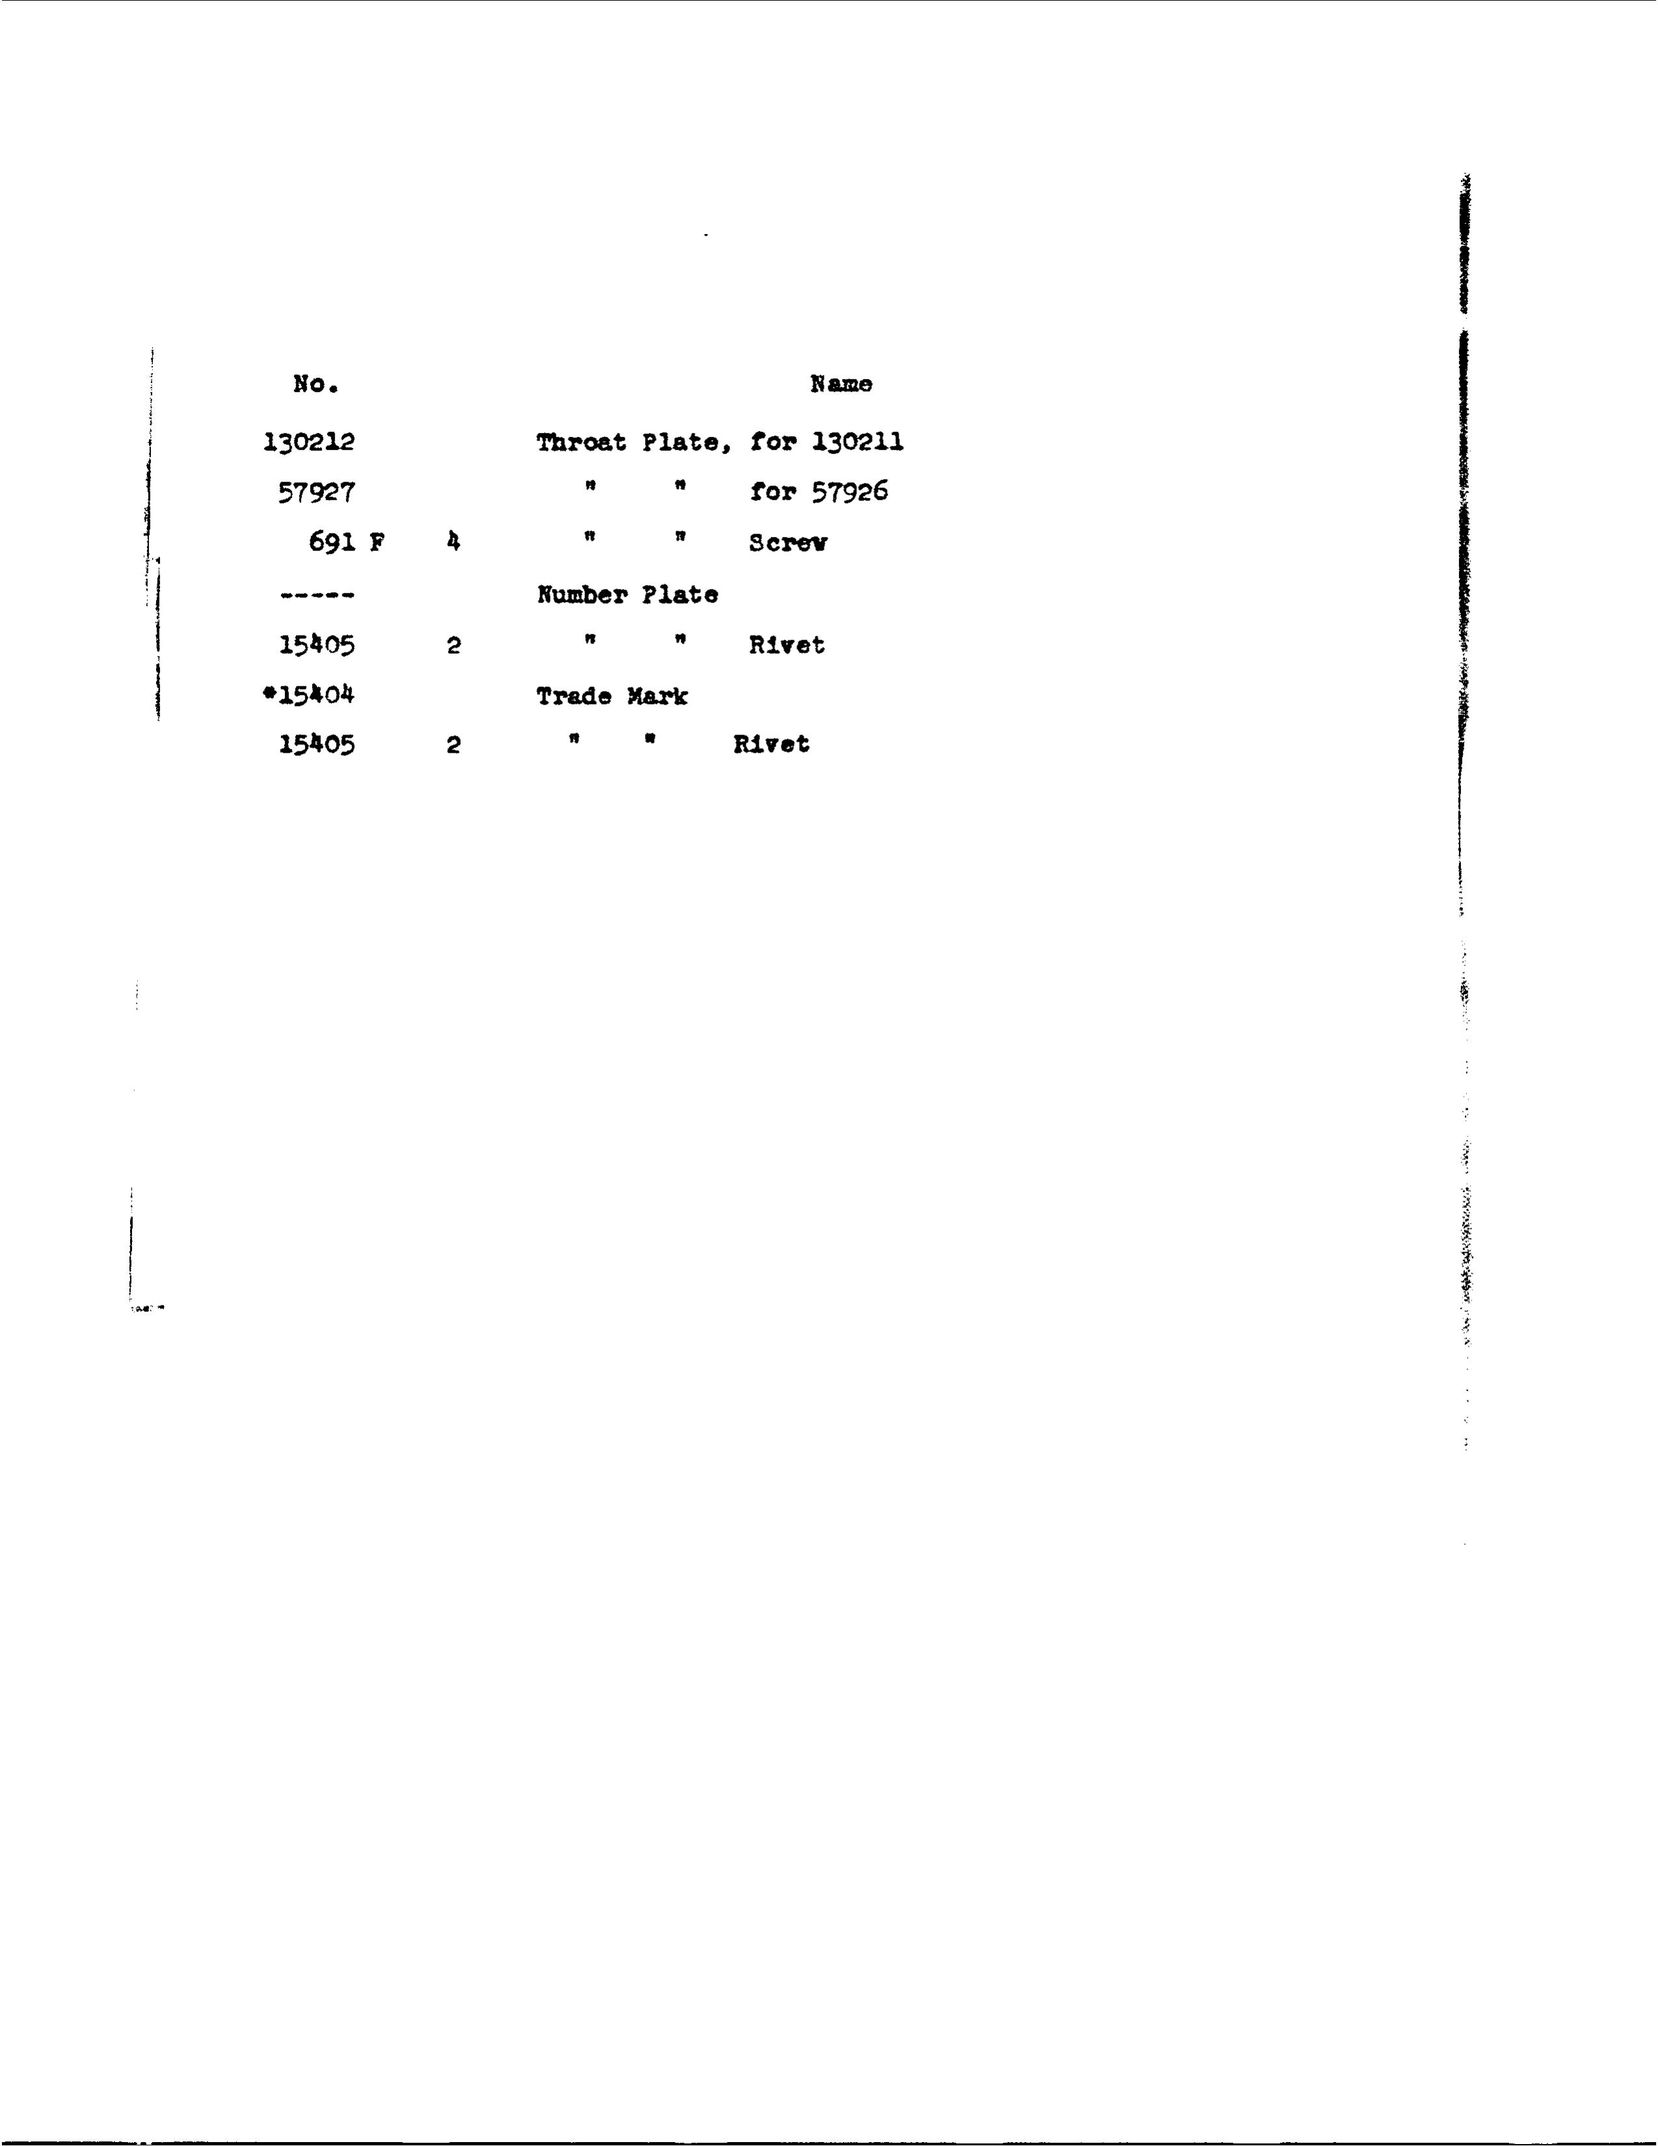 Singer 106-10 Sewing Machine User Manual (Page 17)